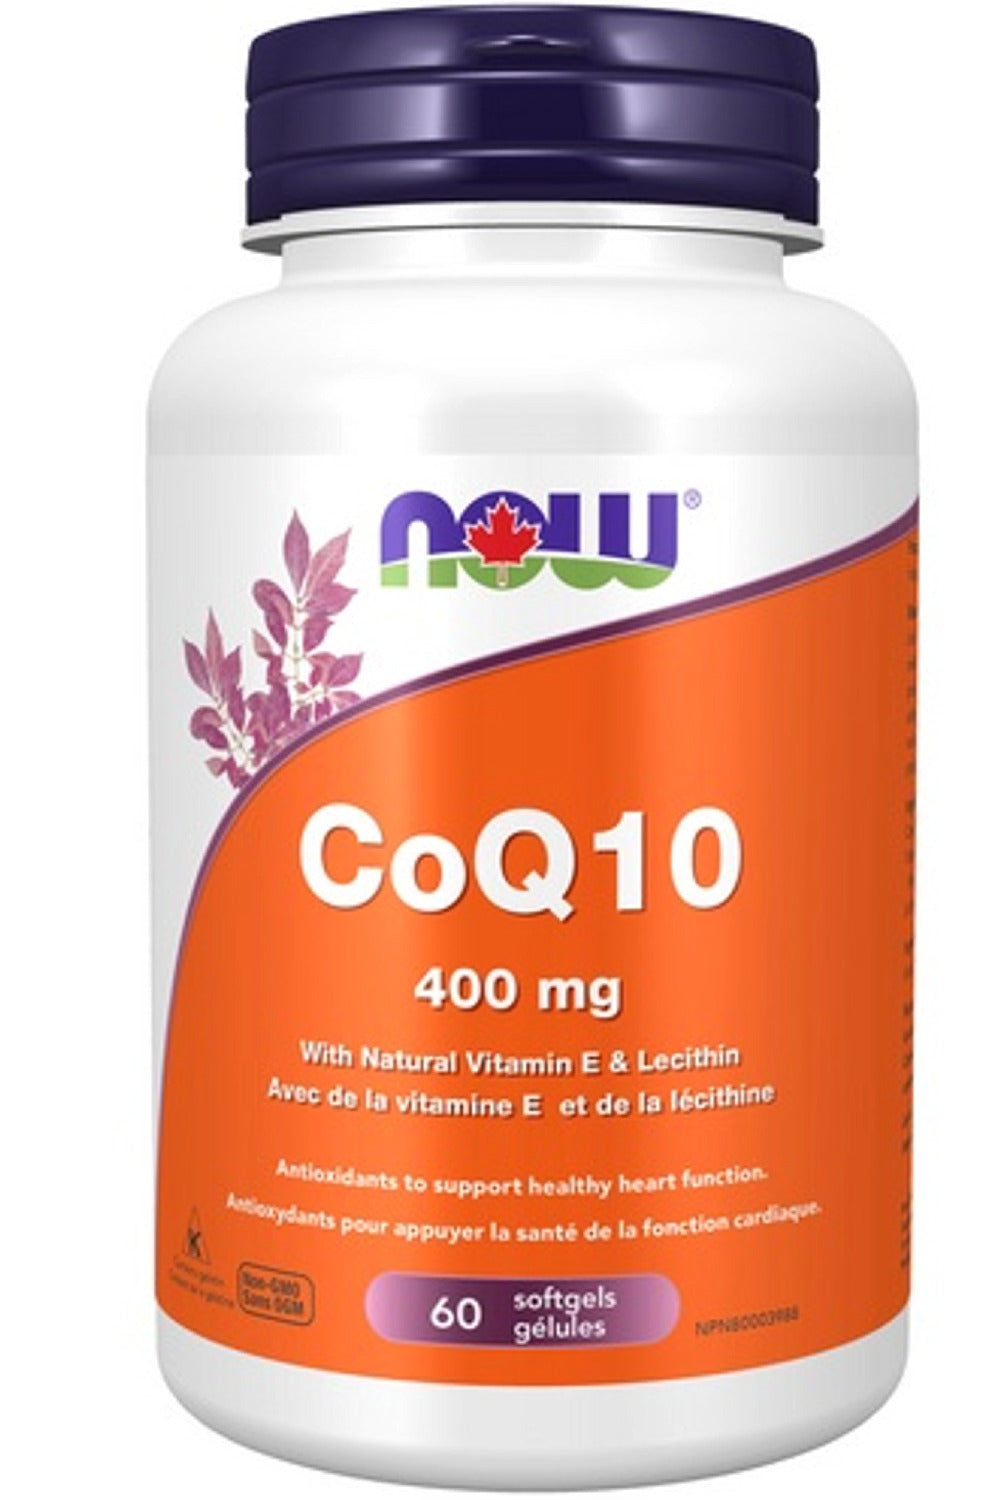 NOW CoQ10 (400 mg - 60 Softgels)